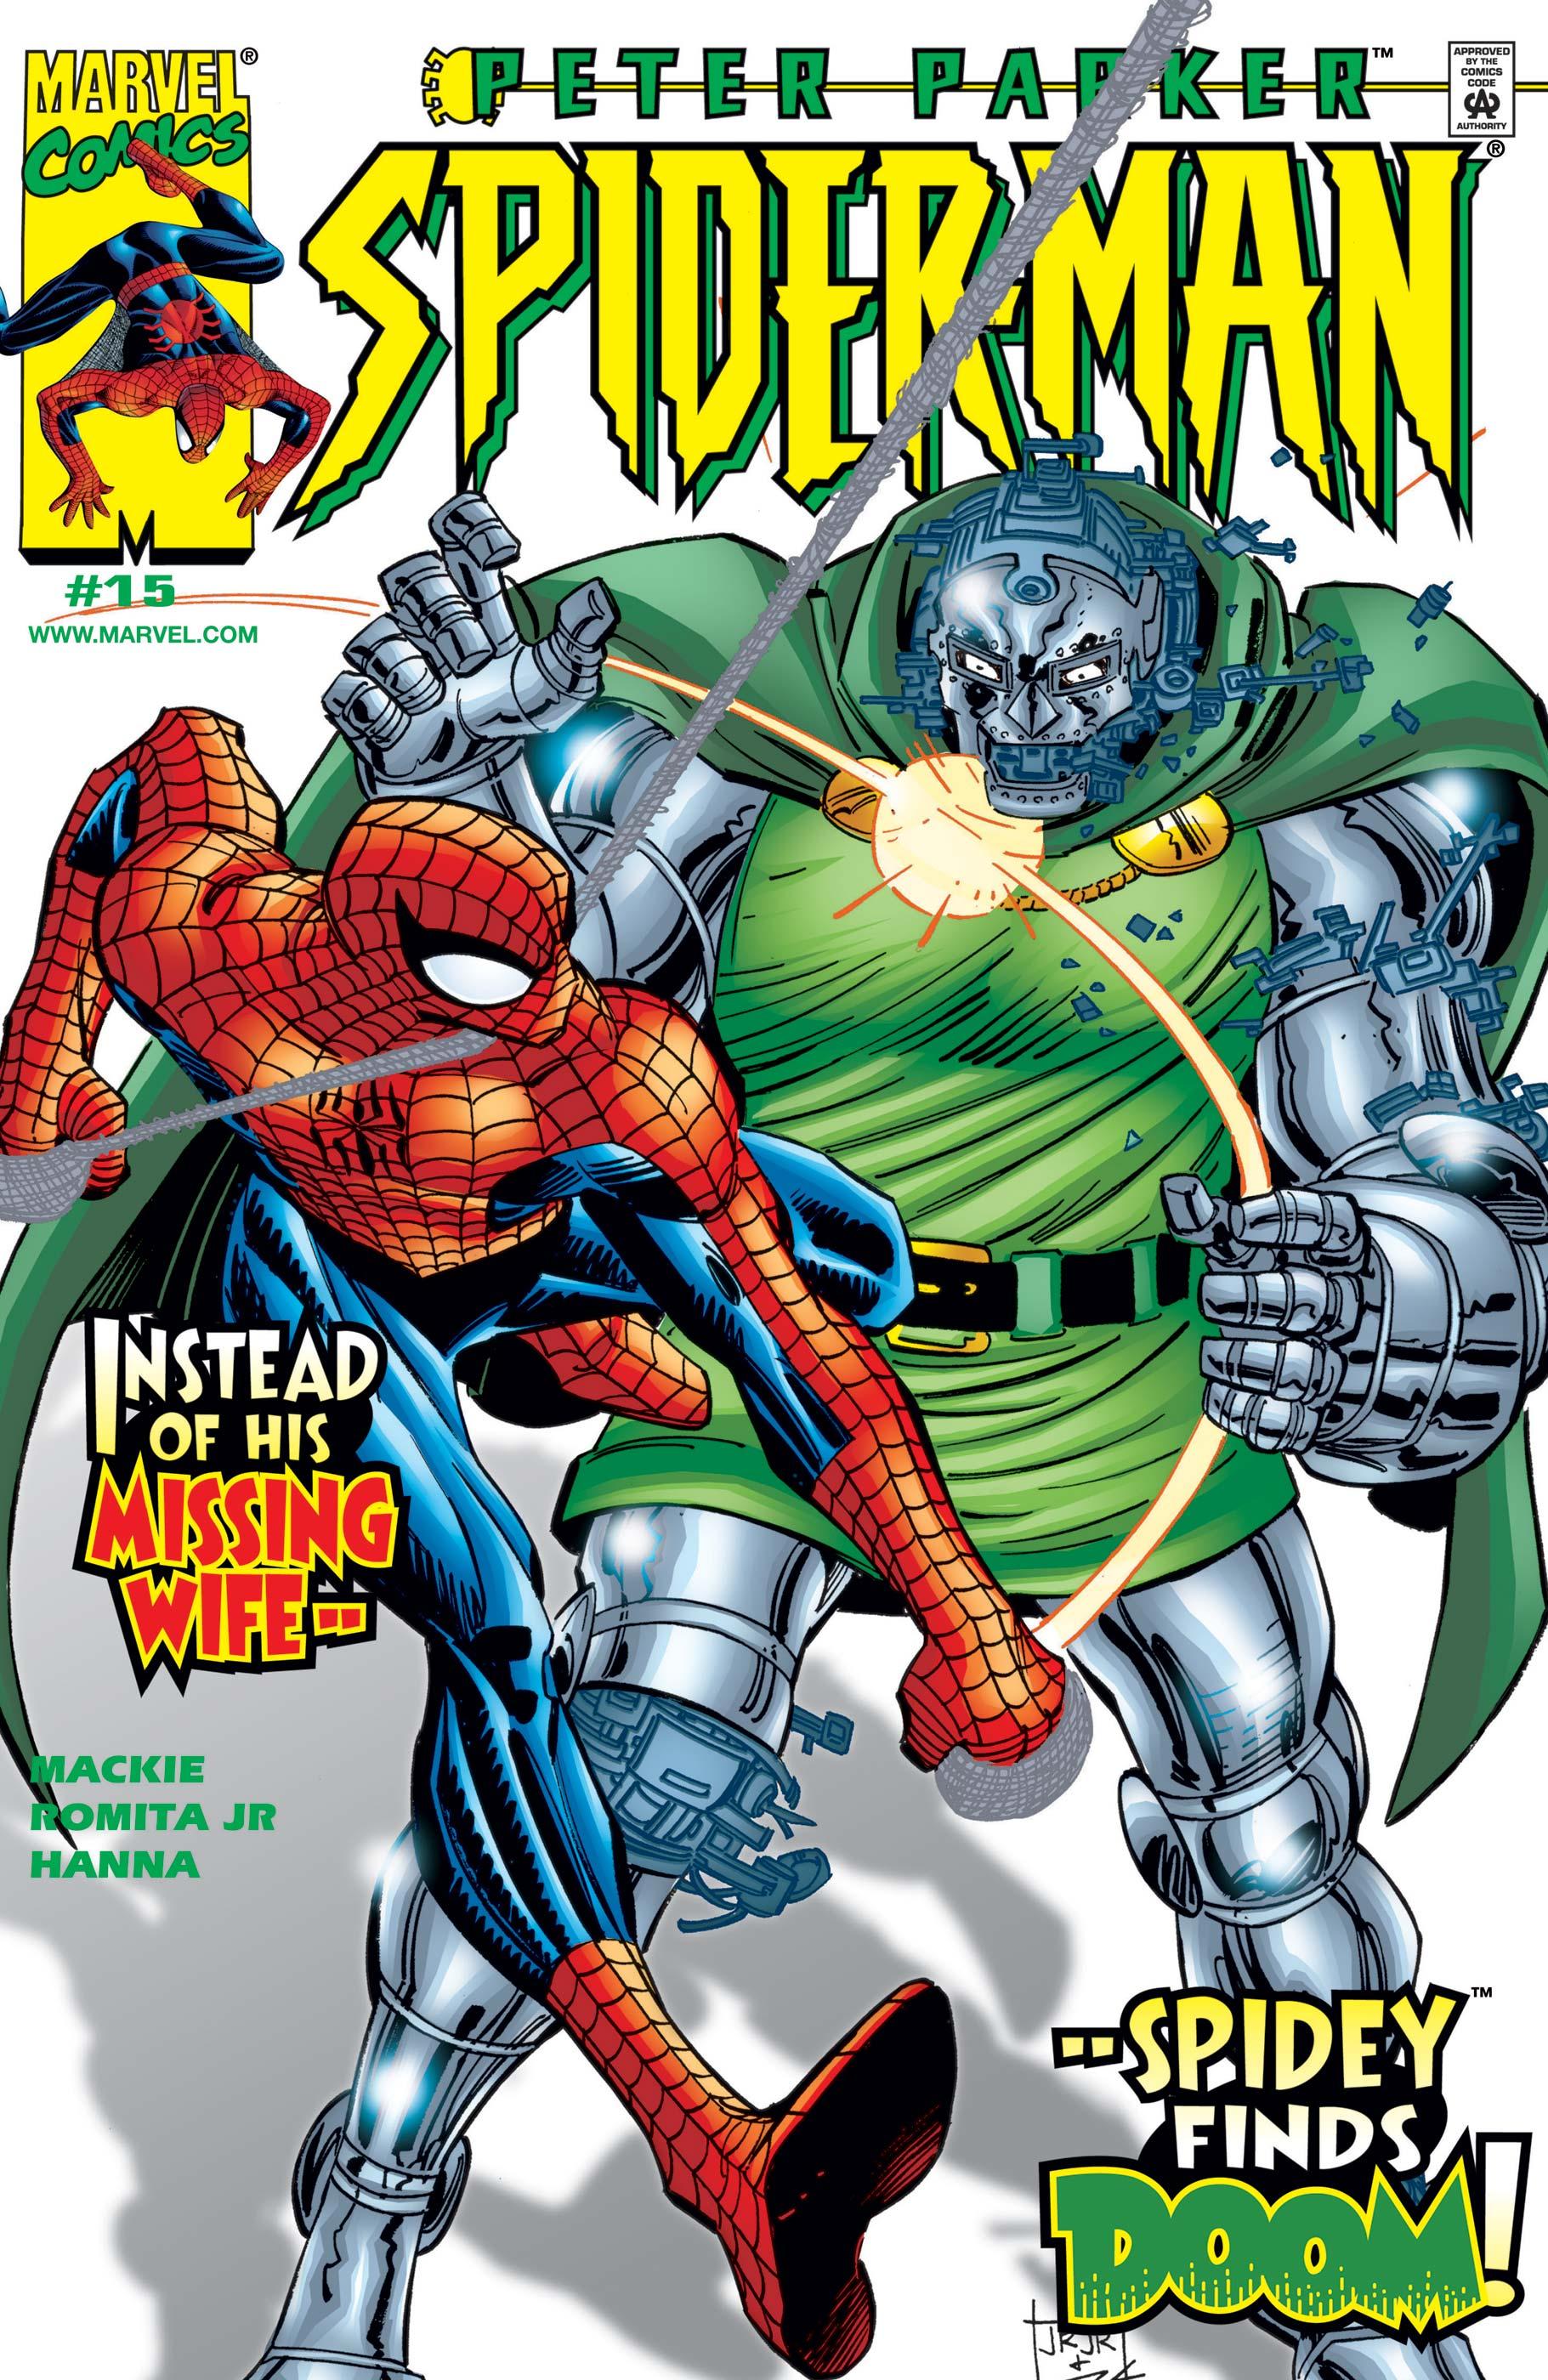 PETER PARKER SPIDER-MAN #12#13#14#15 - MARVEL COMICS (2000)